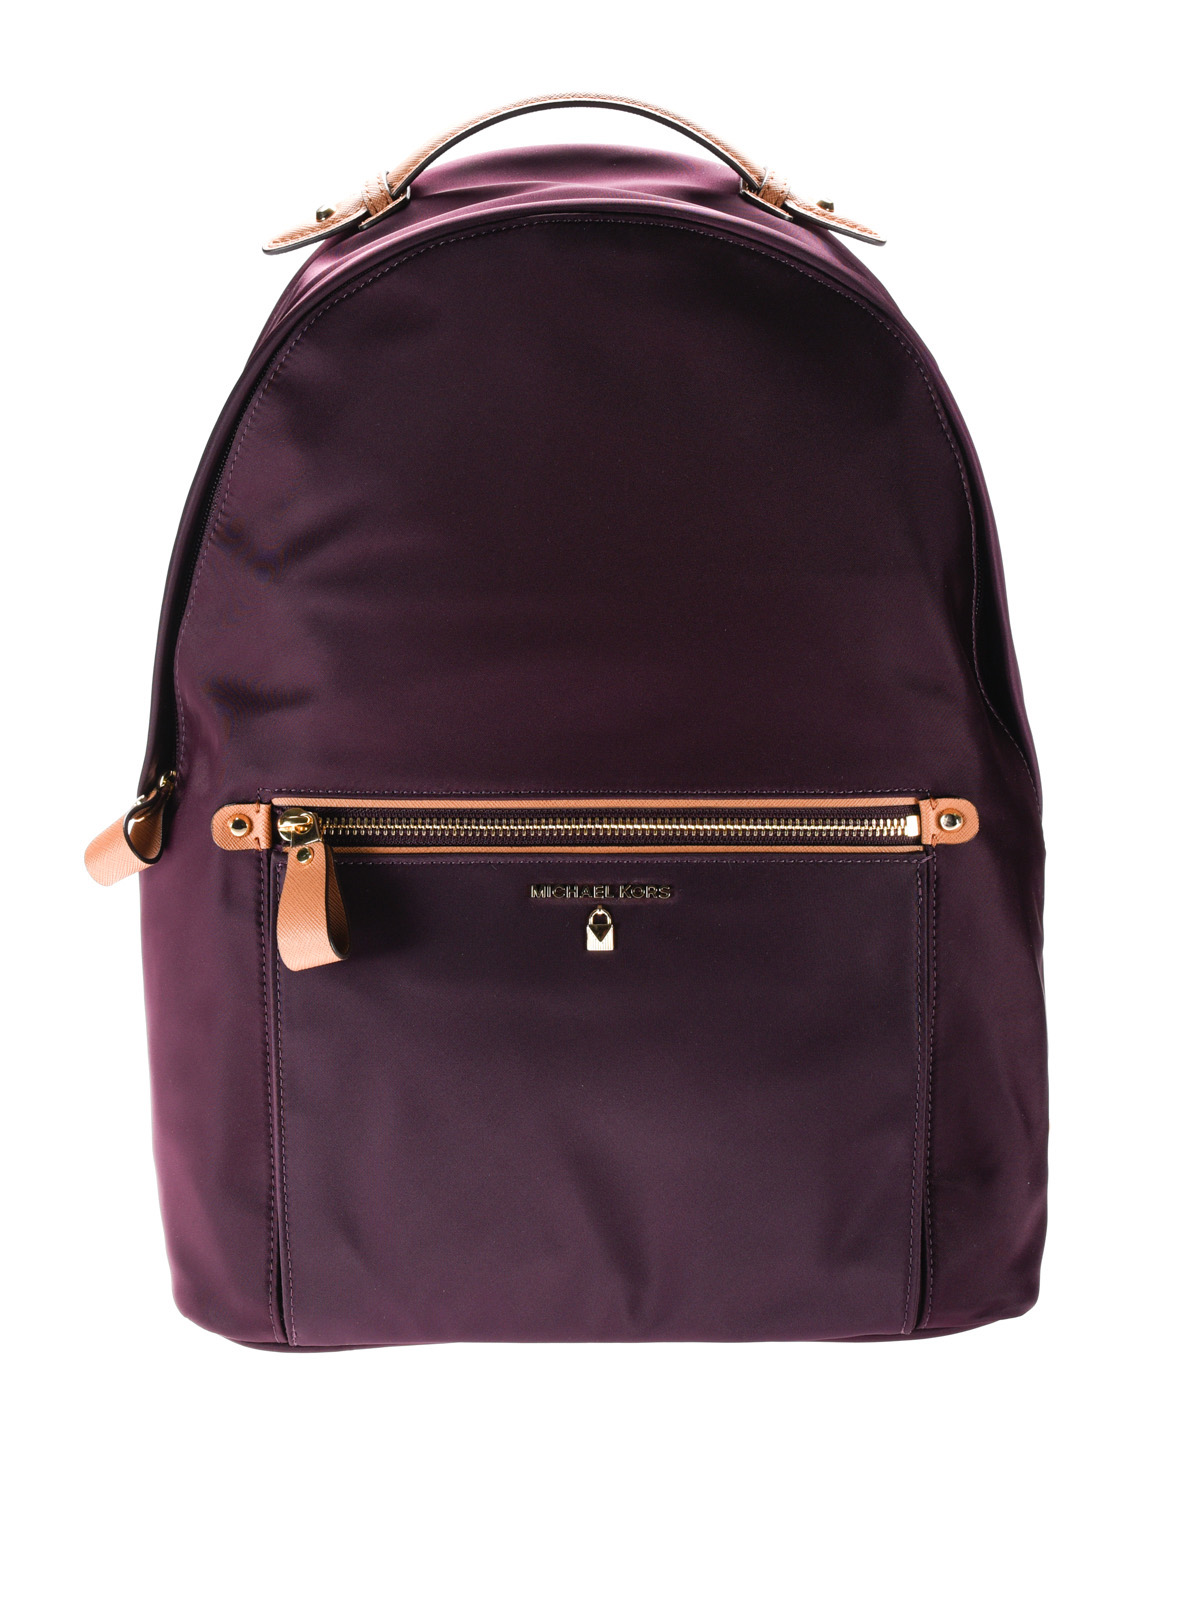 michael kors backpack maroon